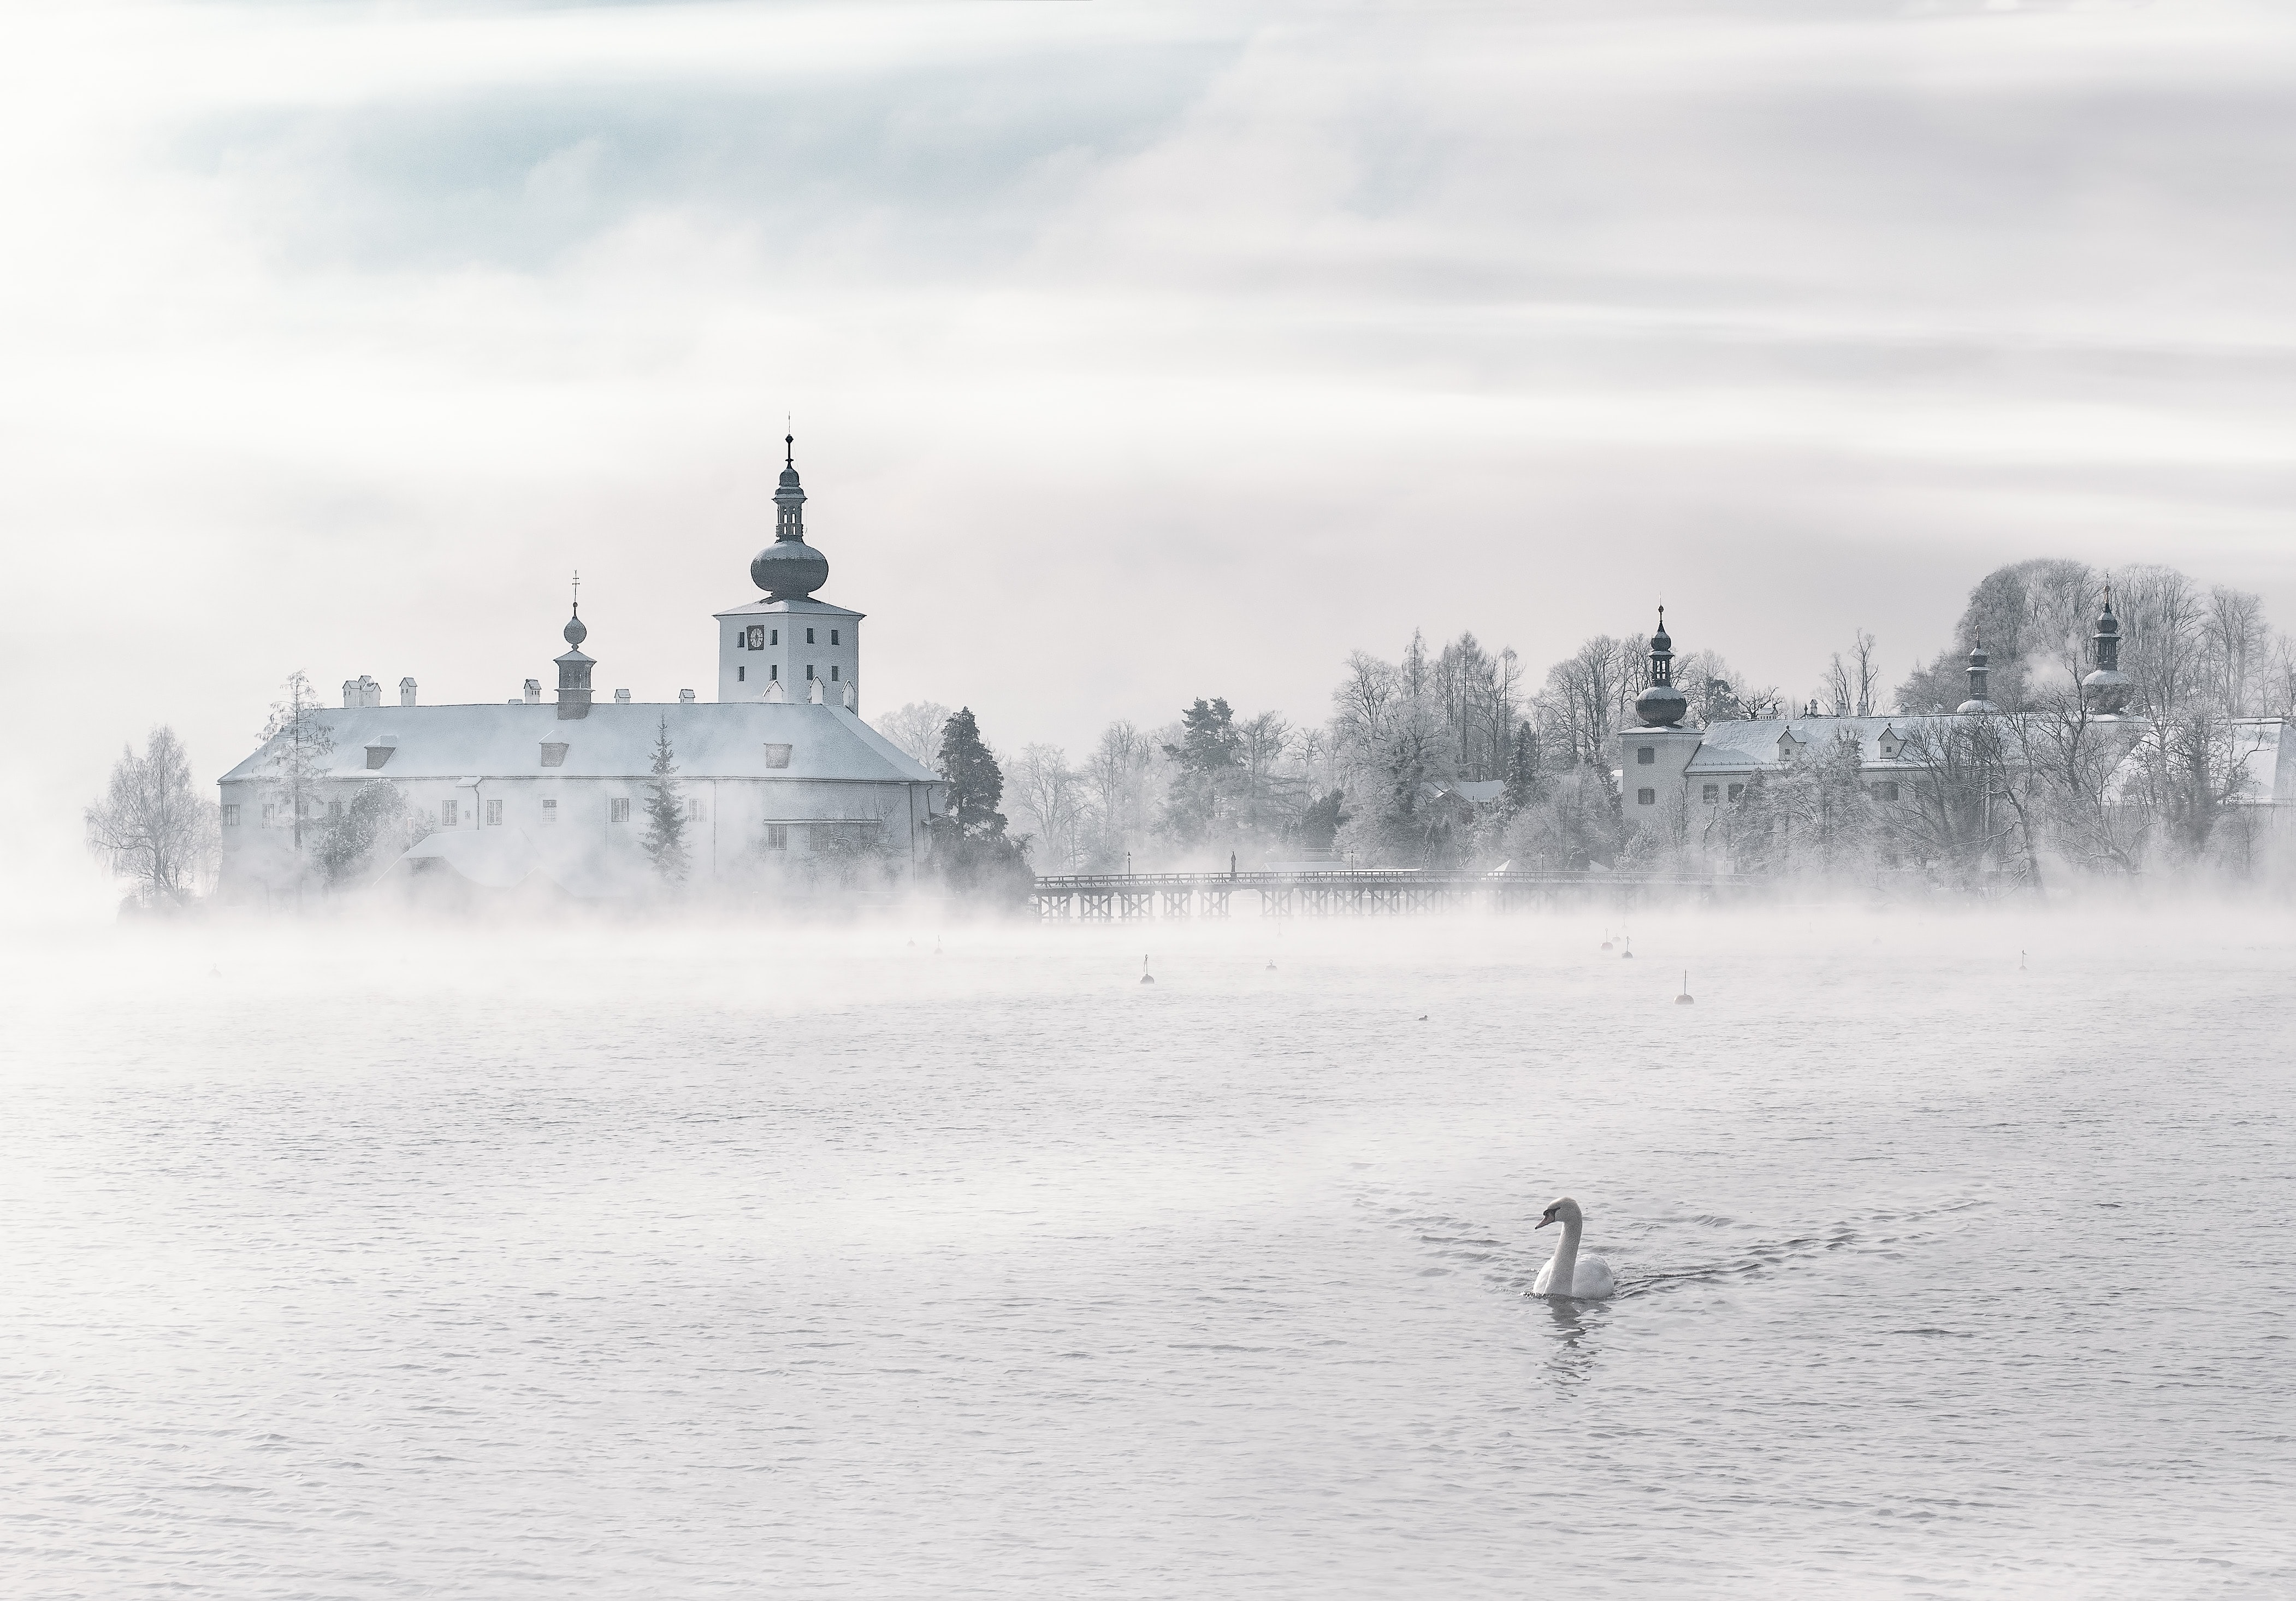 swan in fog in front of old buildings